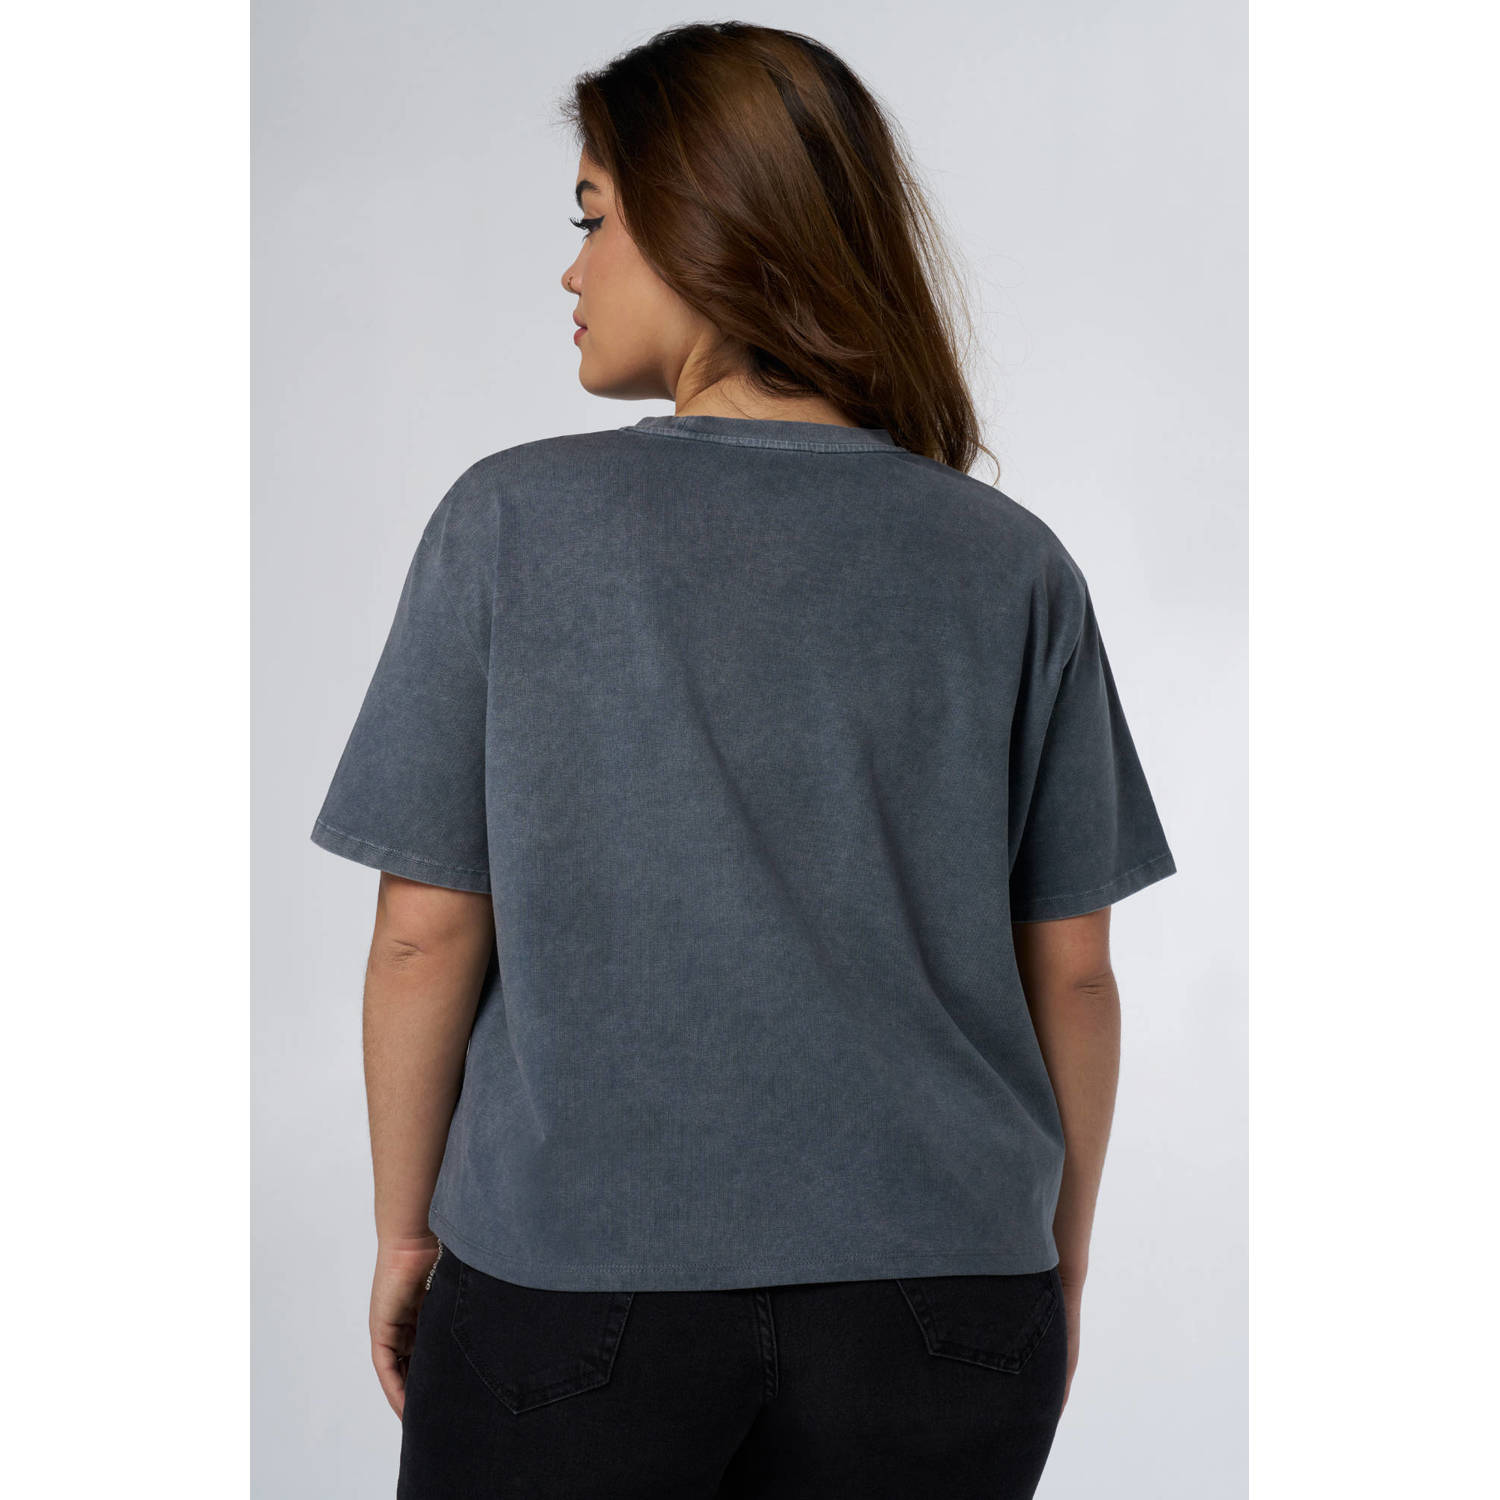 MS Mode T-shirt grijs